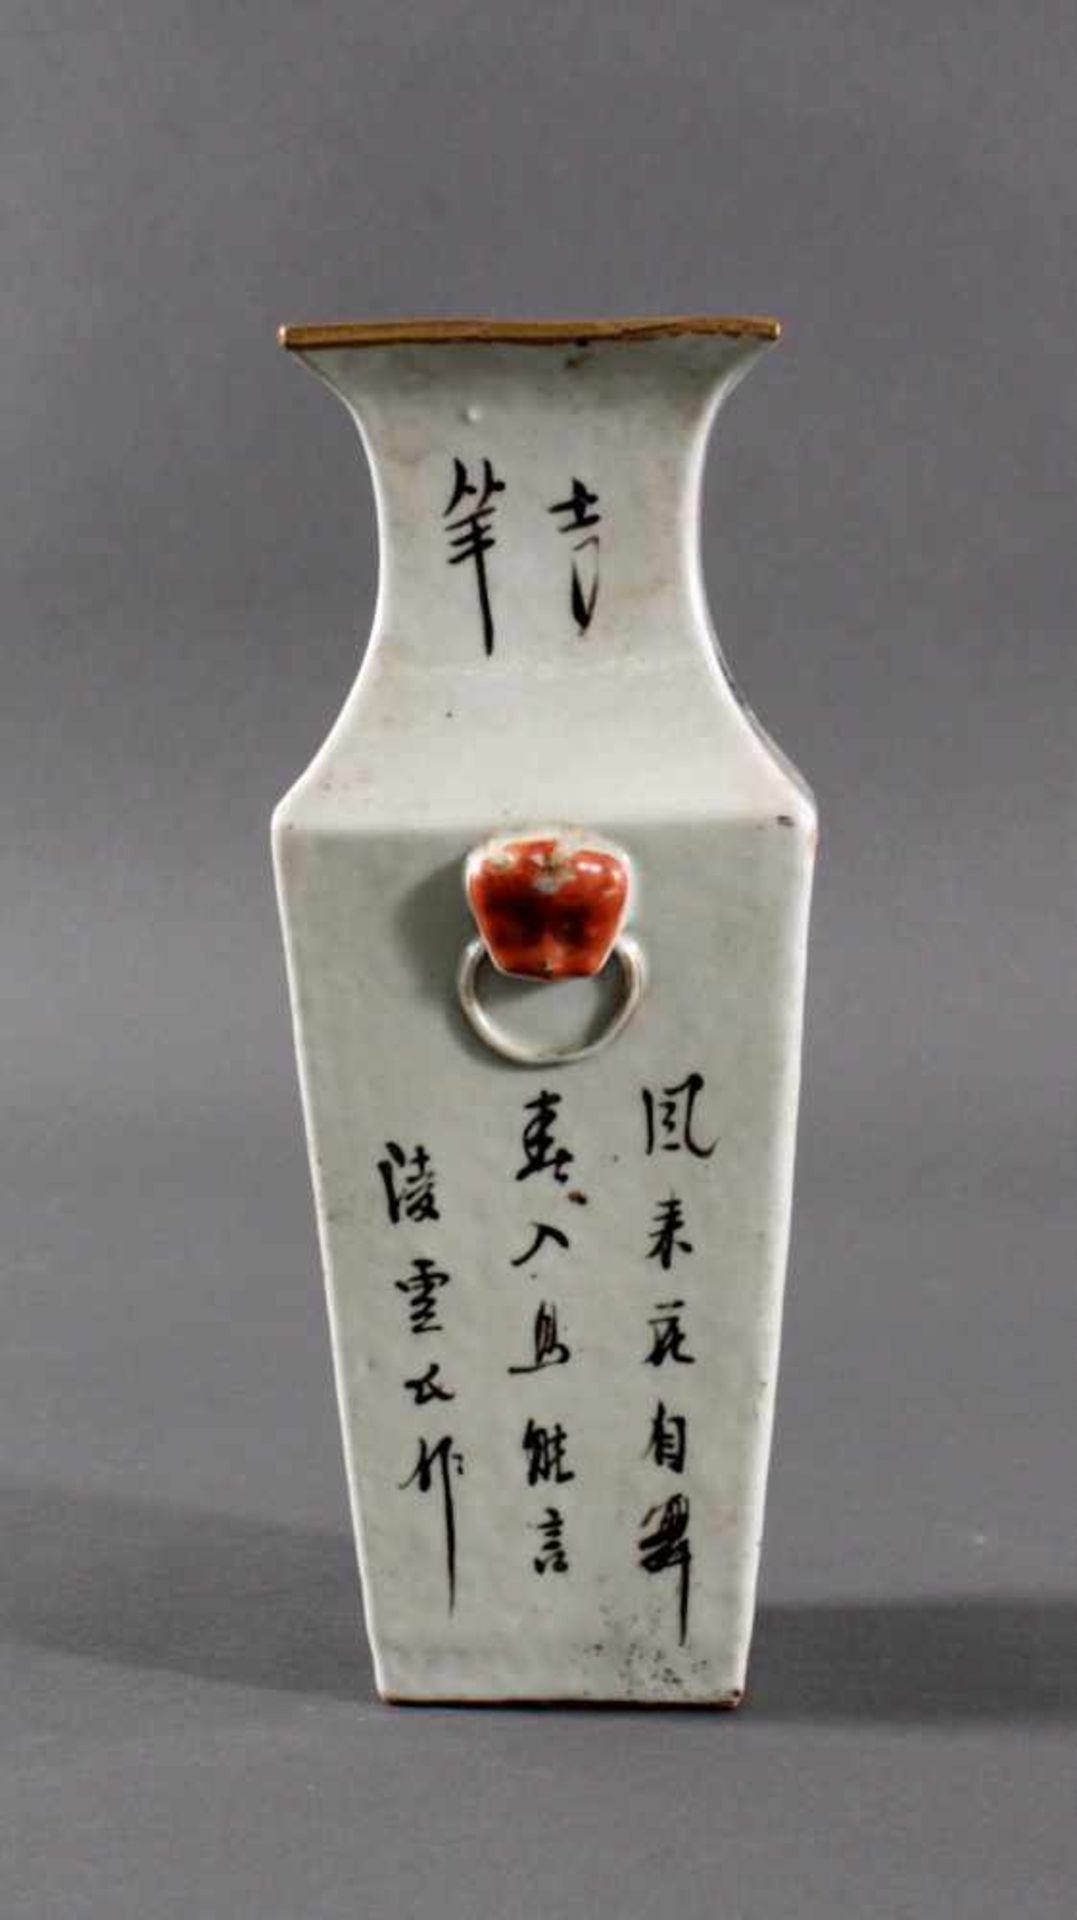 Vase - China 20. Jh.Porzellan, Aufglasurmalerei von Pflanzen- und Vogeldekor.Kalligraphie, - Bild 4 aus 5